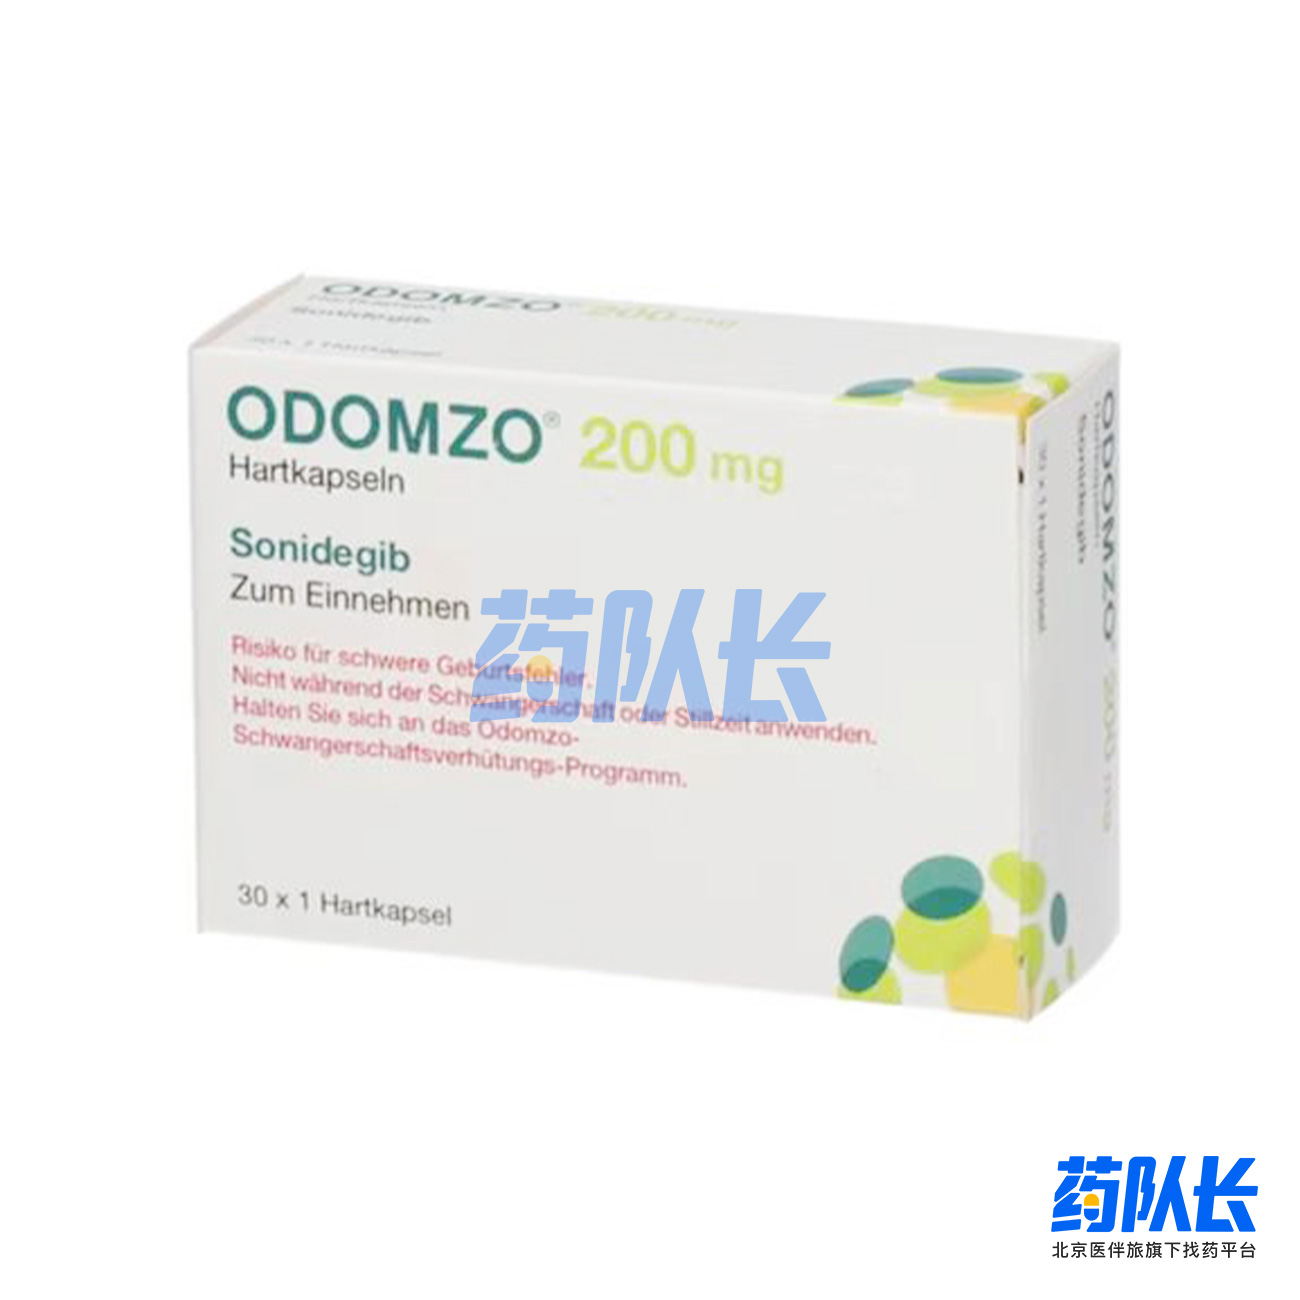 Odomzo（磷酸索尼德吉胶囊）.jpg